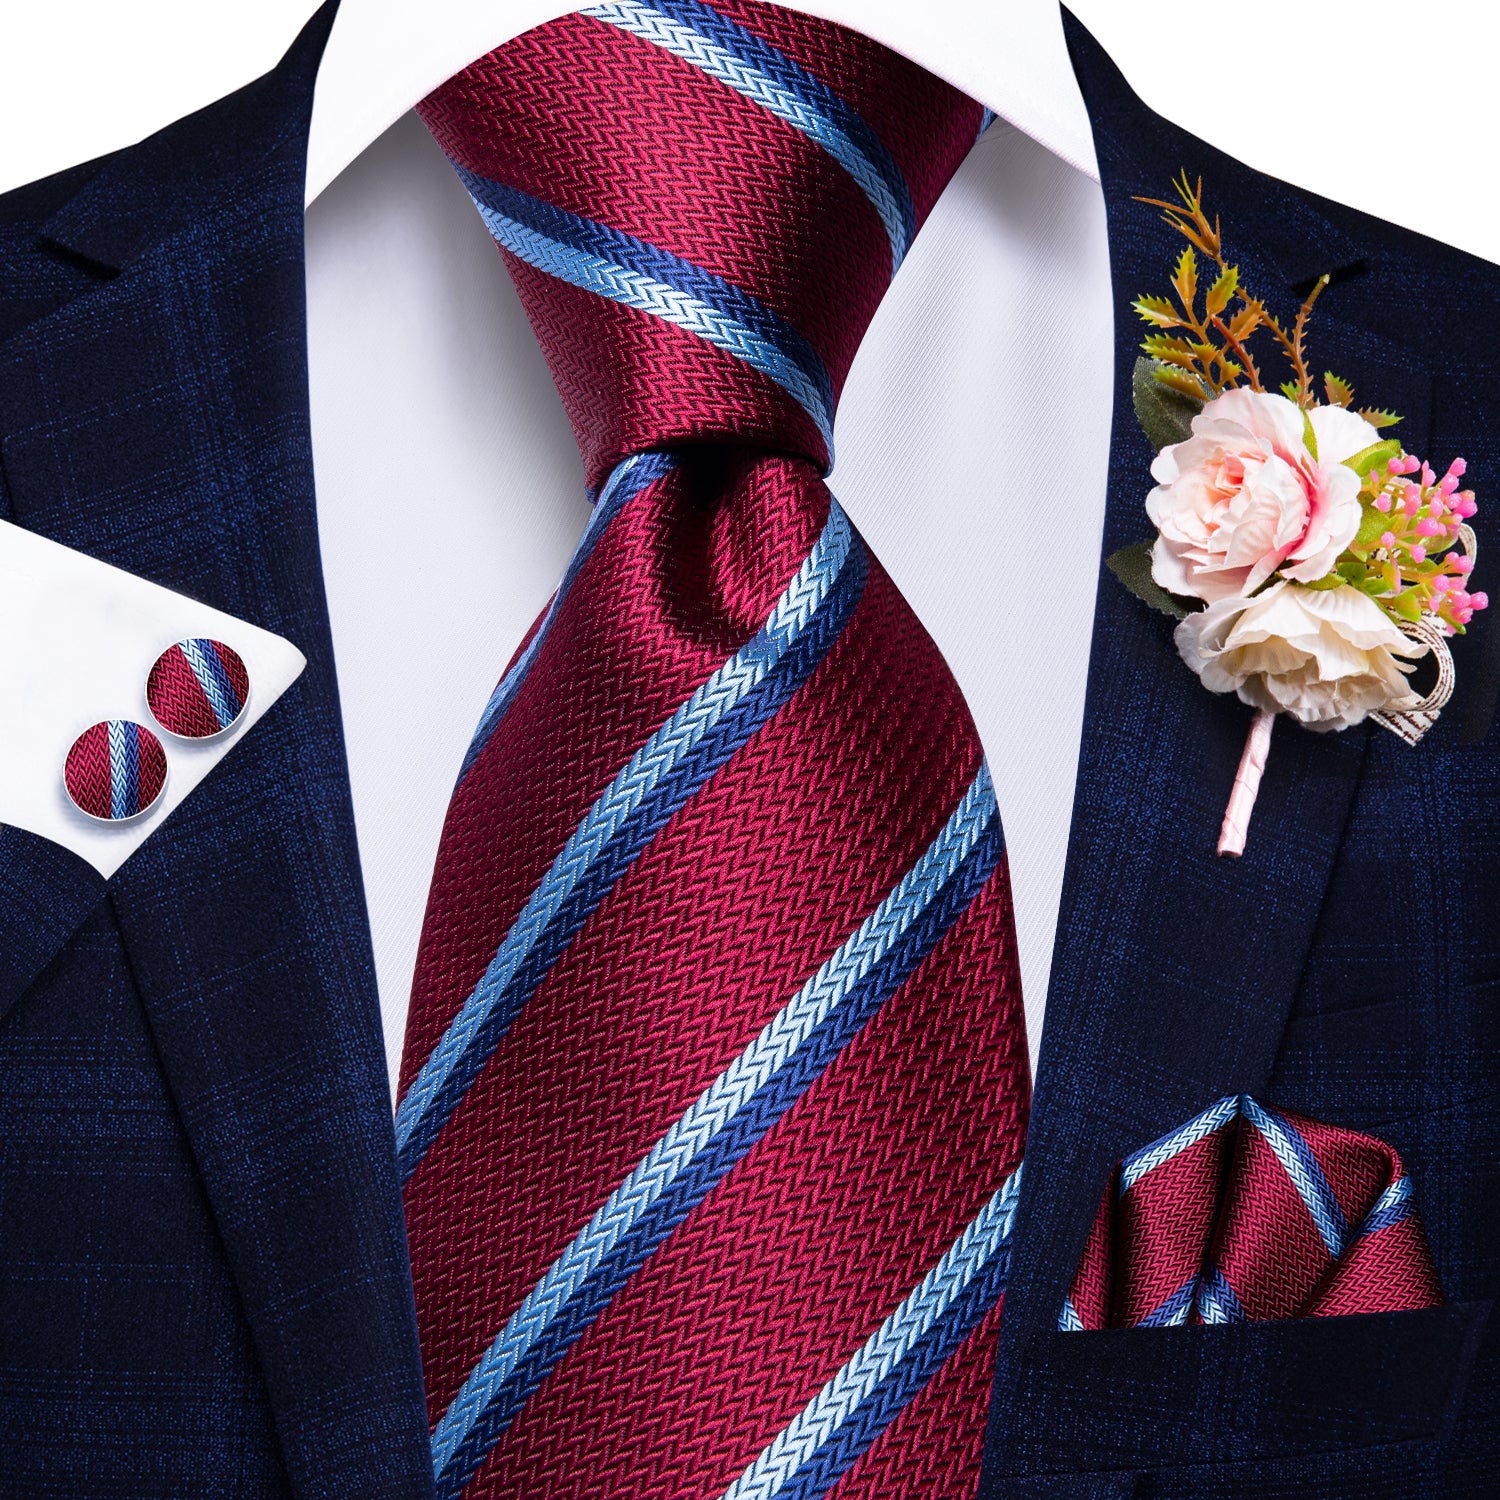 Burgundy Red Striped Tie Handkerchief Cufflinks Set with Wedding Brooch